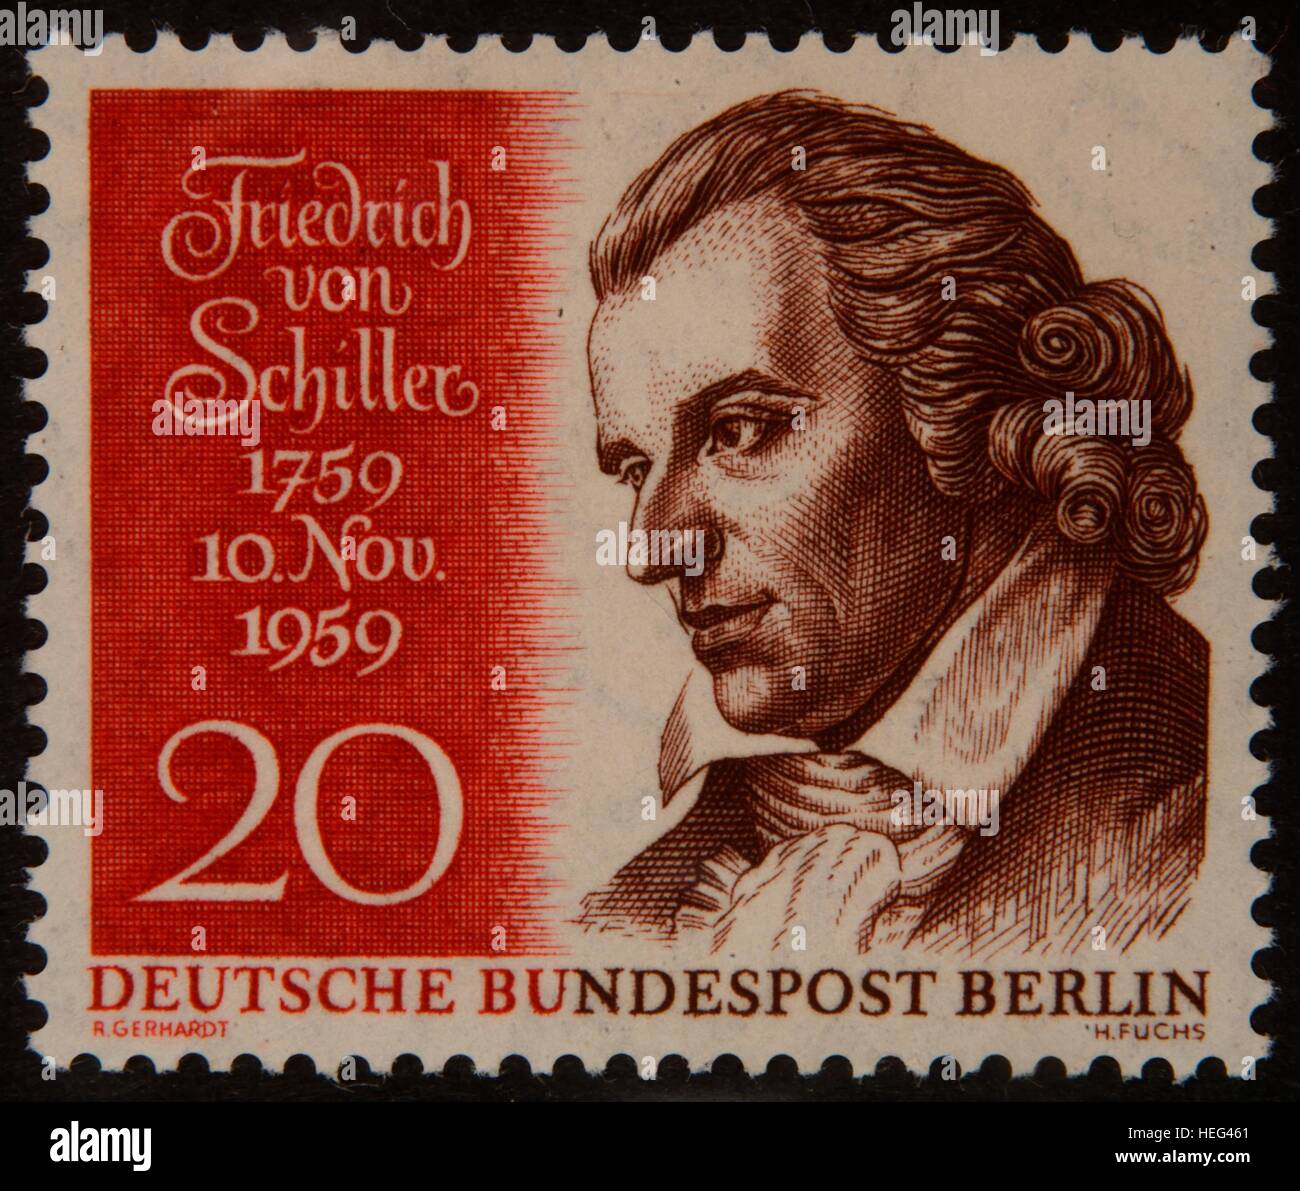 Friedrich von Schiller, deutscher Dichter, Portrait auf 1959 Deutsche Briefmarke Stockfoto